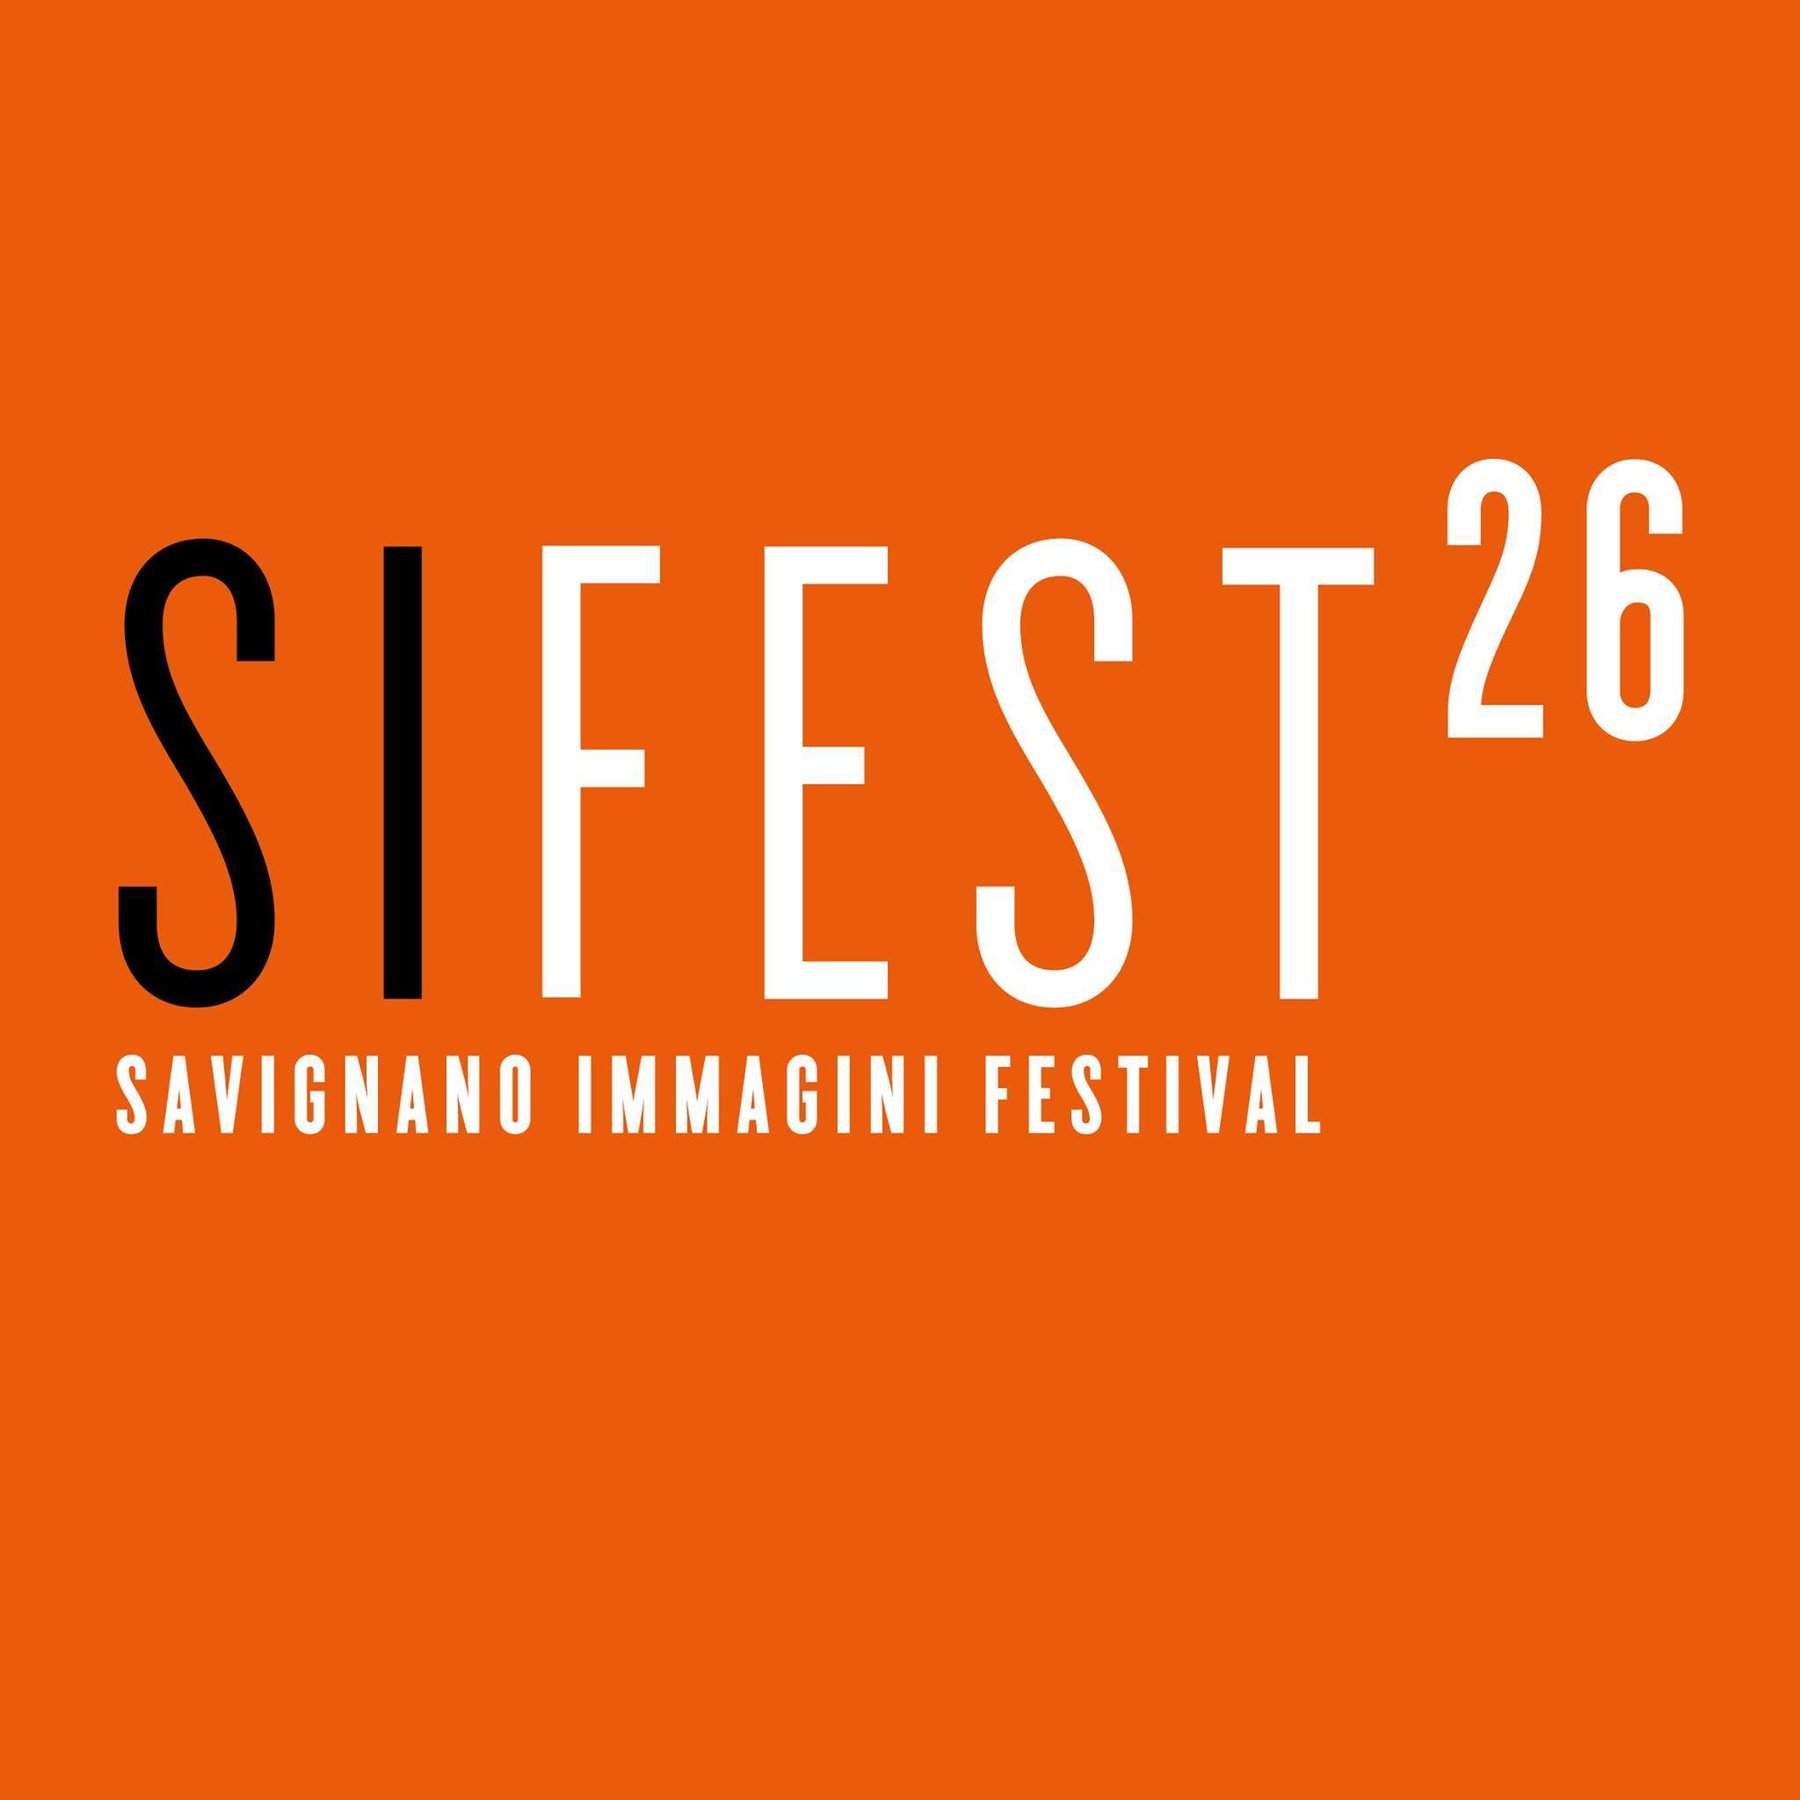 Sifest26 - Collezione Donata Pizzi